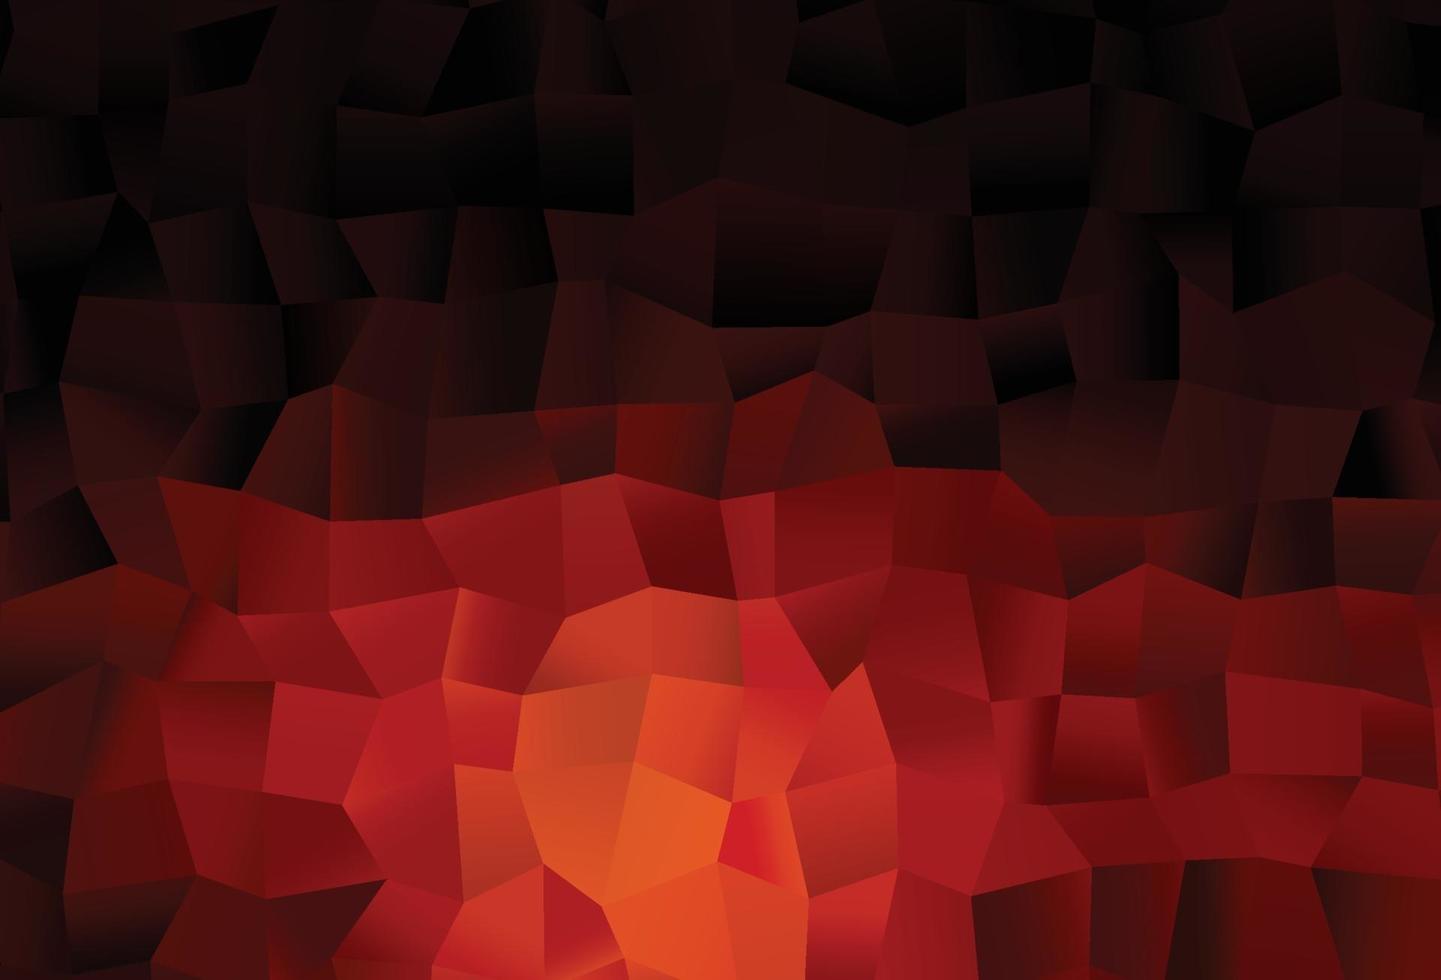 padrão de vetor vermelho escuro com cristais, retângulos.